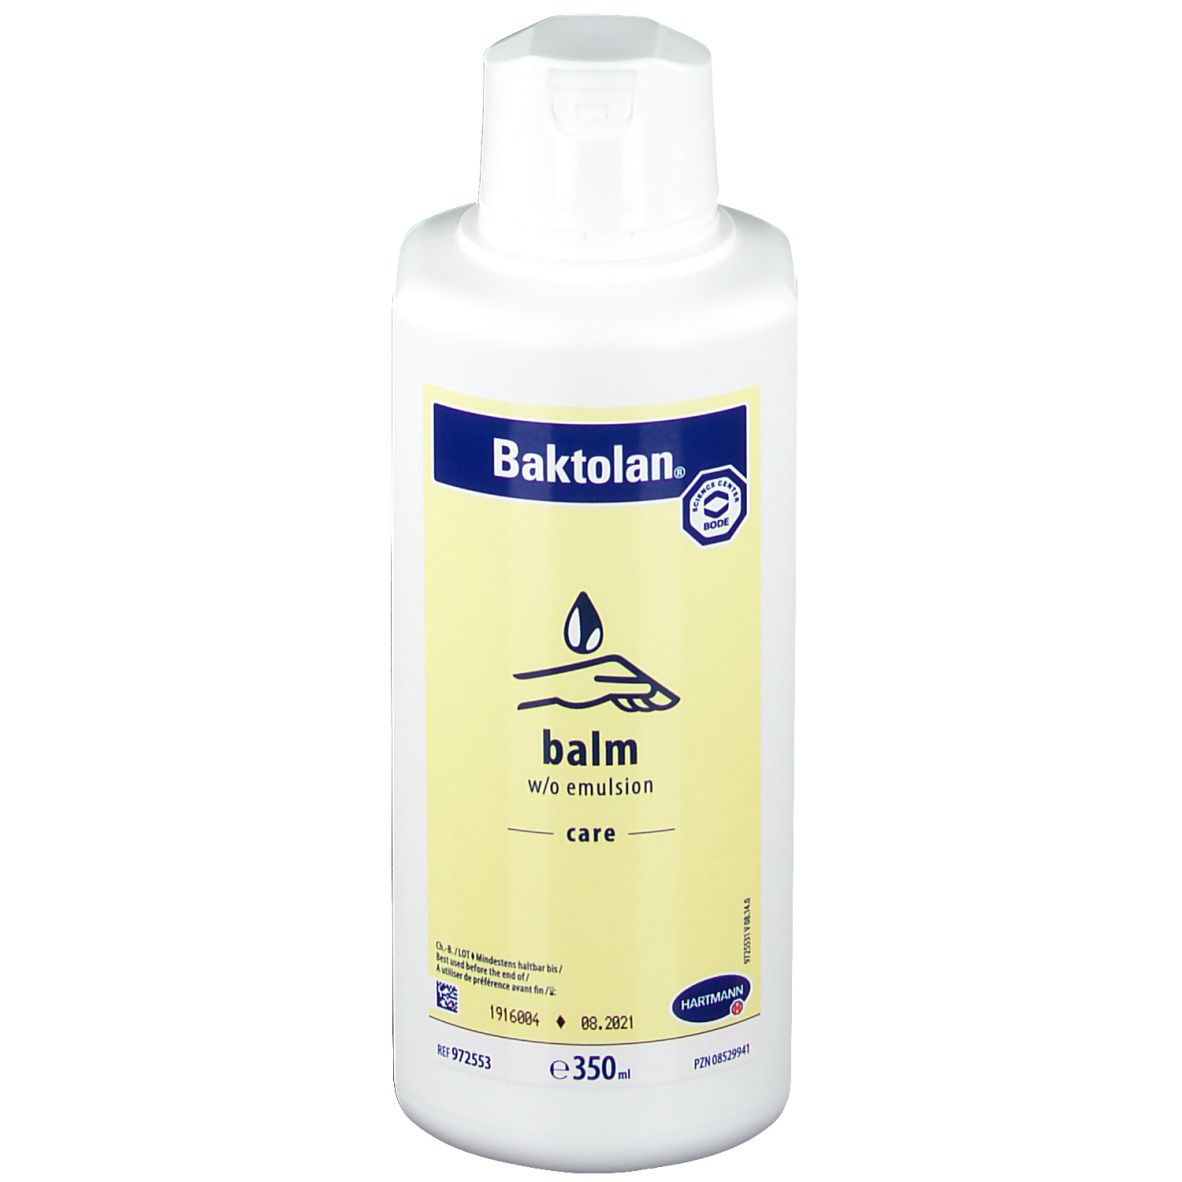 Baktolan® balm